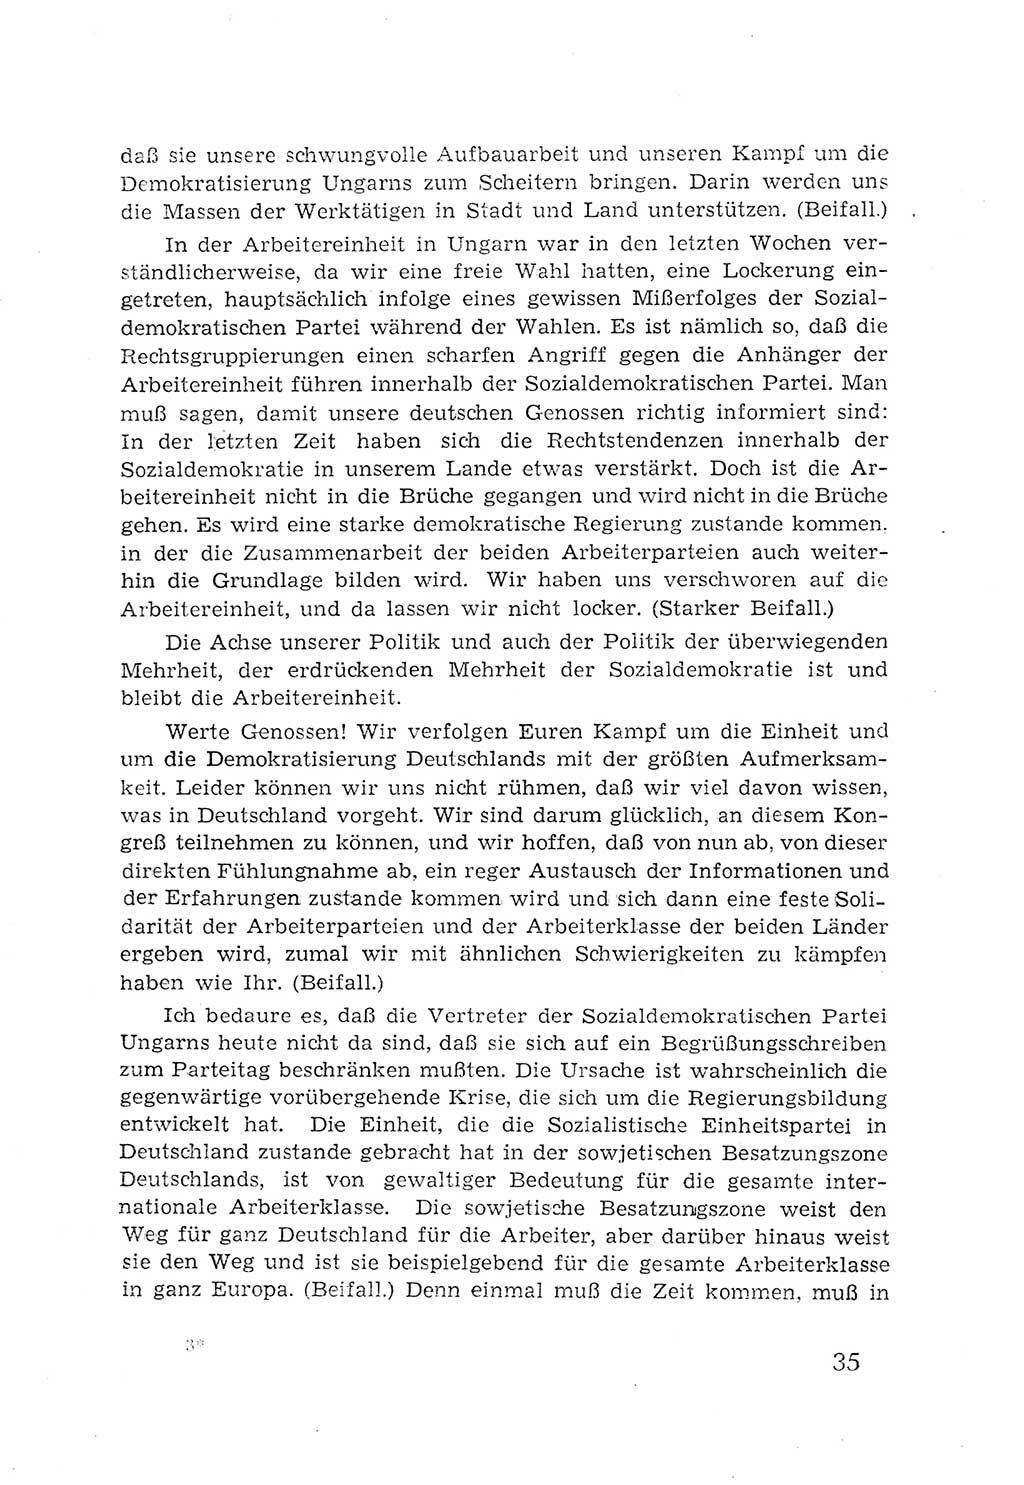 Protokoll der Verhandlungen des 2. Parteitages der Sozialistischen Einheitspartei Deutschlands (SED) [Sowjetische Besatzungszone (SBZ) Deutschlands] 1947, Seite 35 (Prot. Verh. 2. PT SED SBZ Dtl. 1947, S. 35)